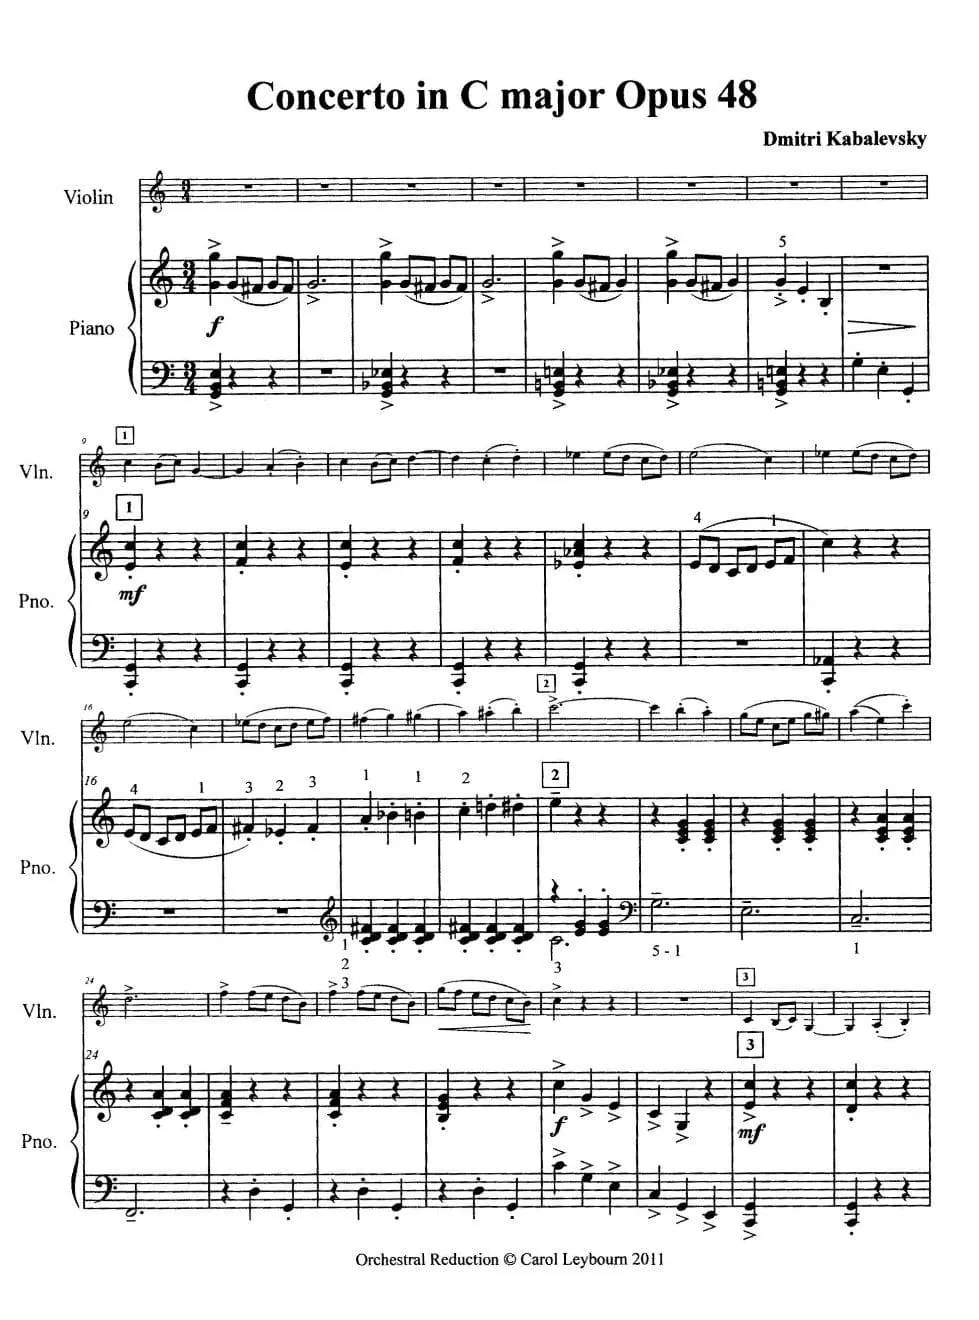 kabalevsky violin - What instrument did Kabalevsky play